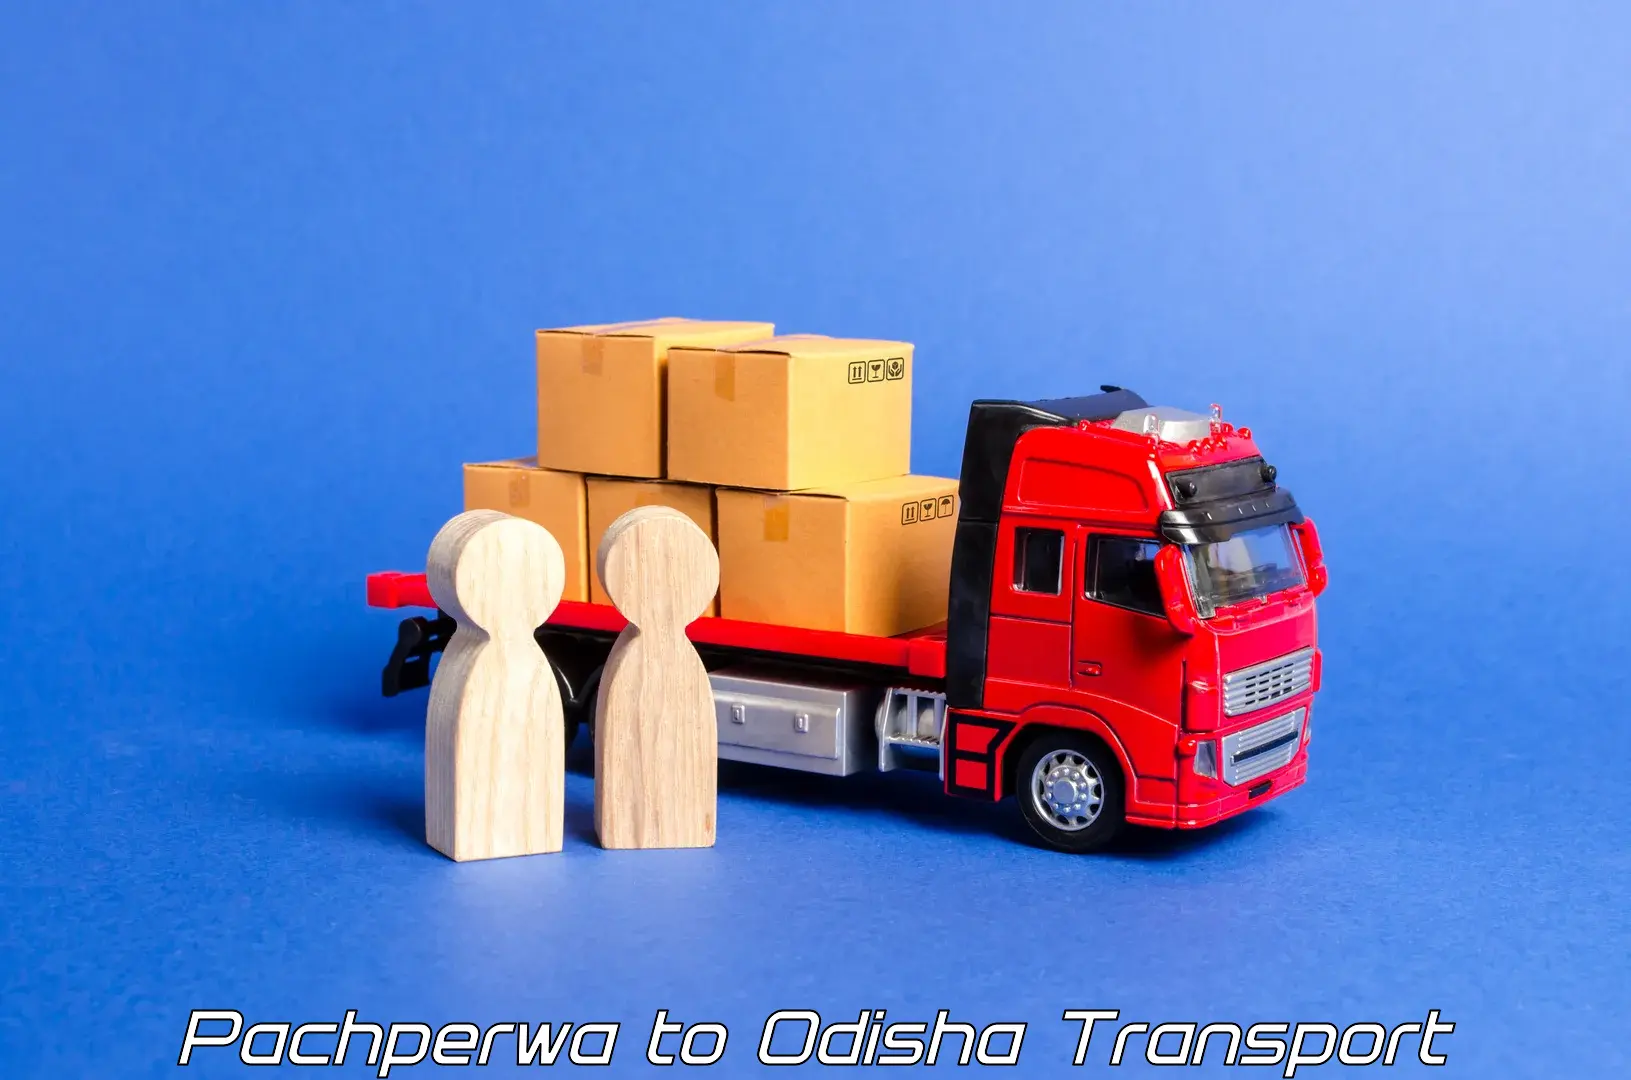 Daily transport service Pachperwa to Odisha